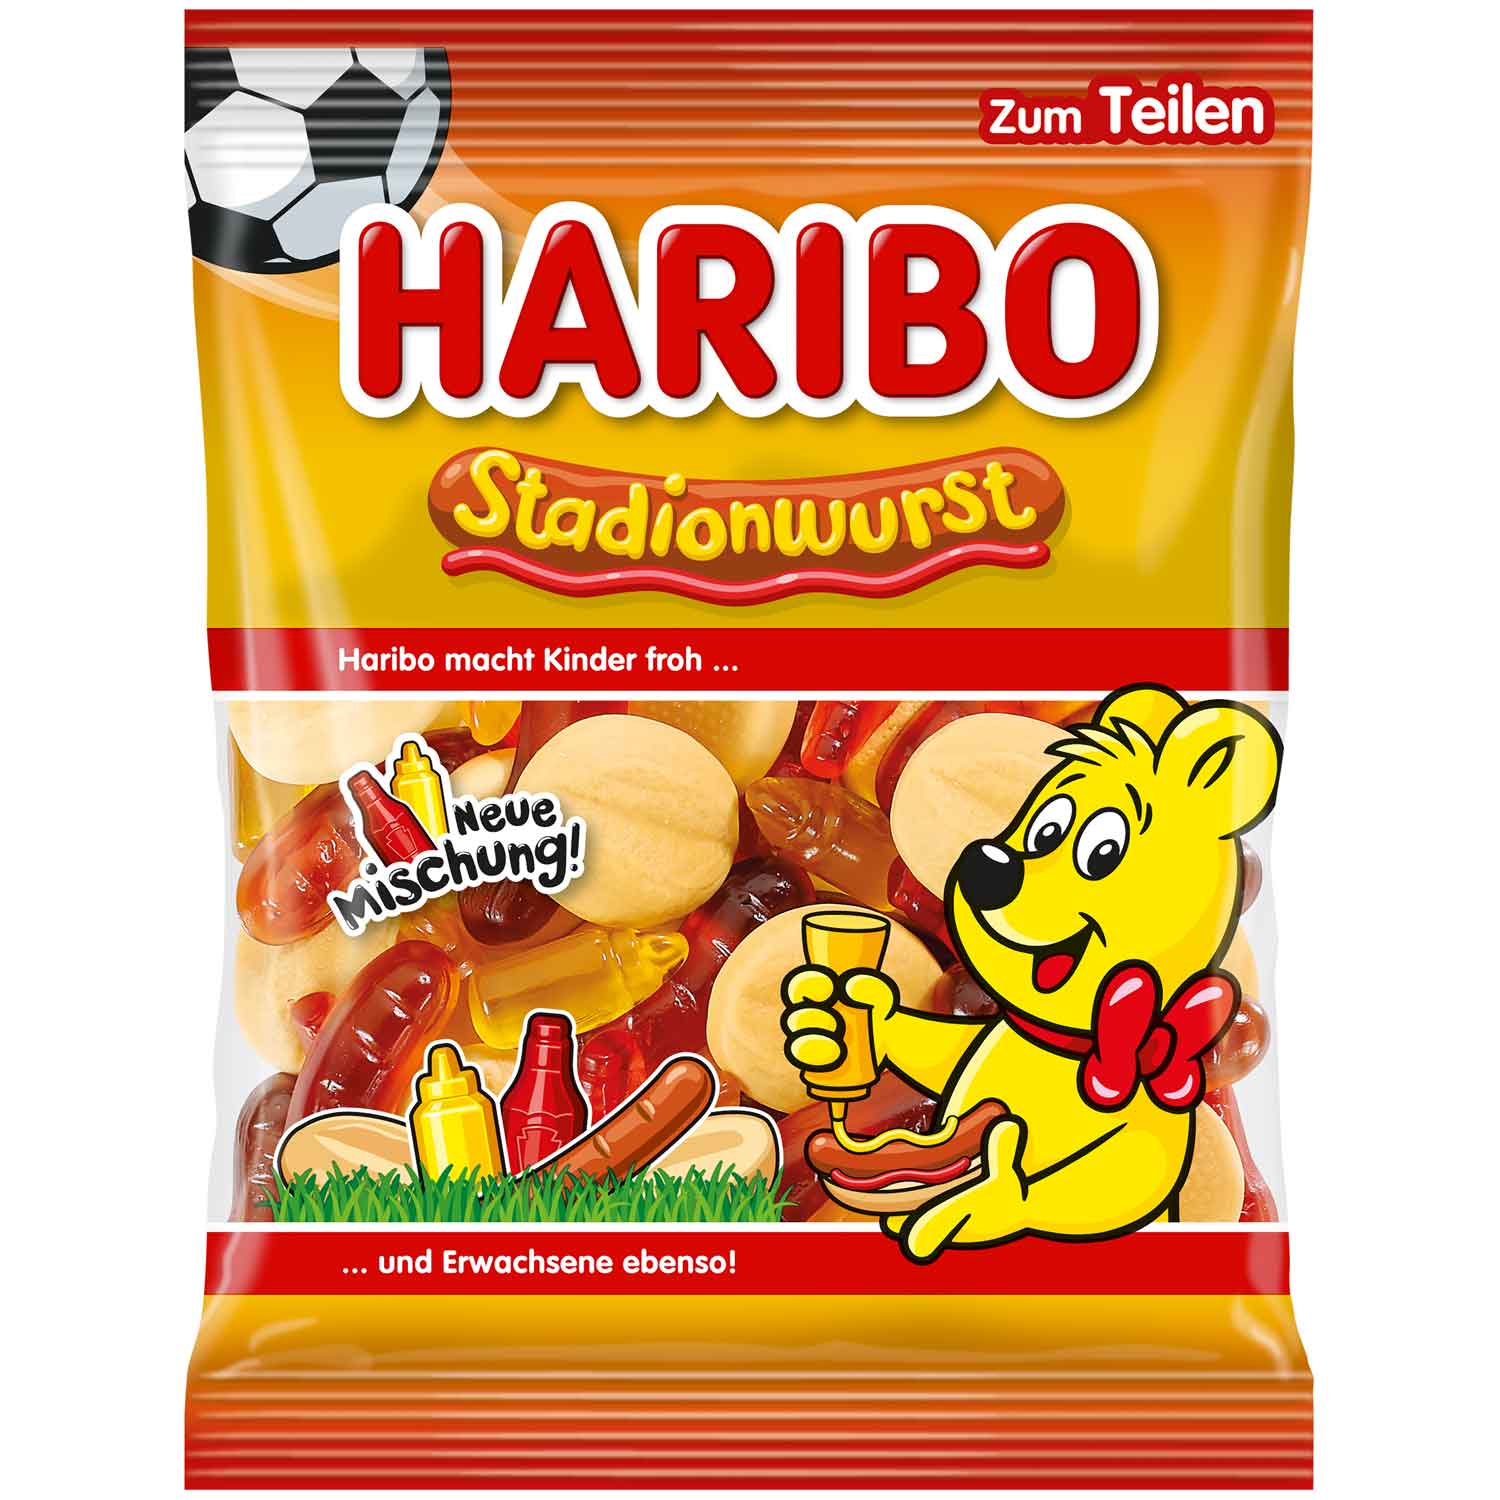 Haribo Stadionwurst 175g (Germany)